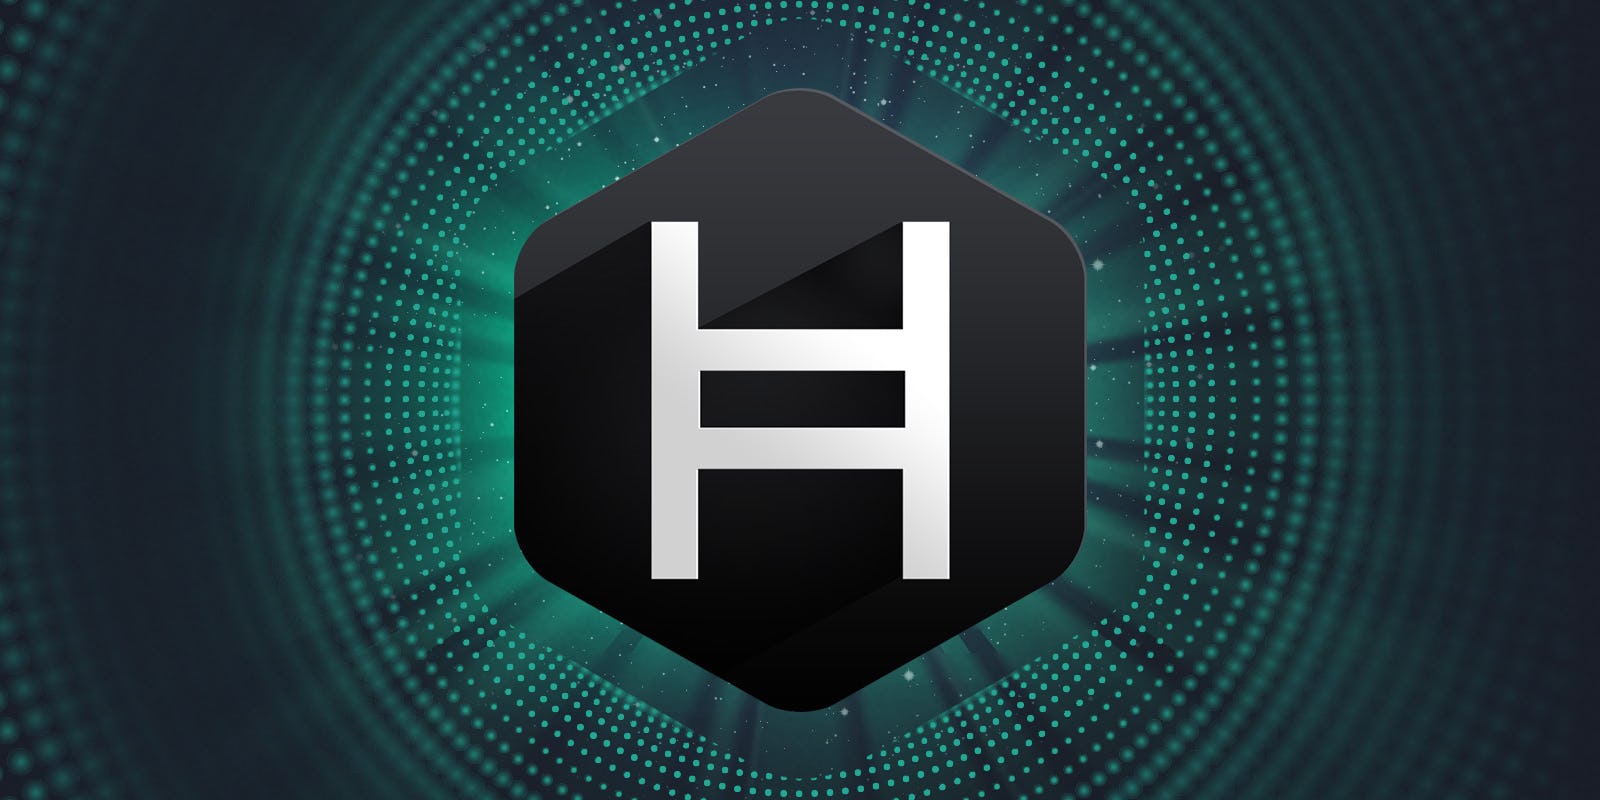 Hedera Hashgraph (HBAR) launch